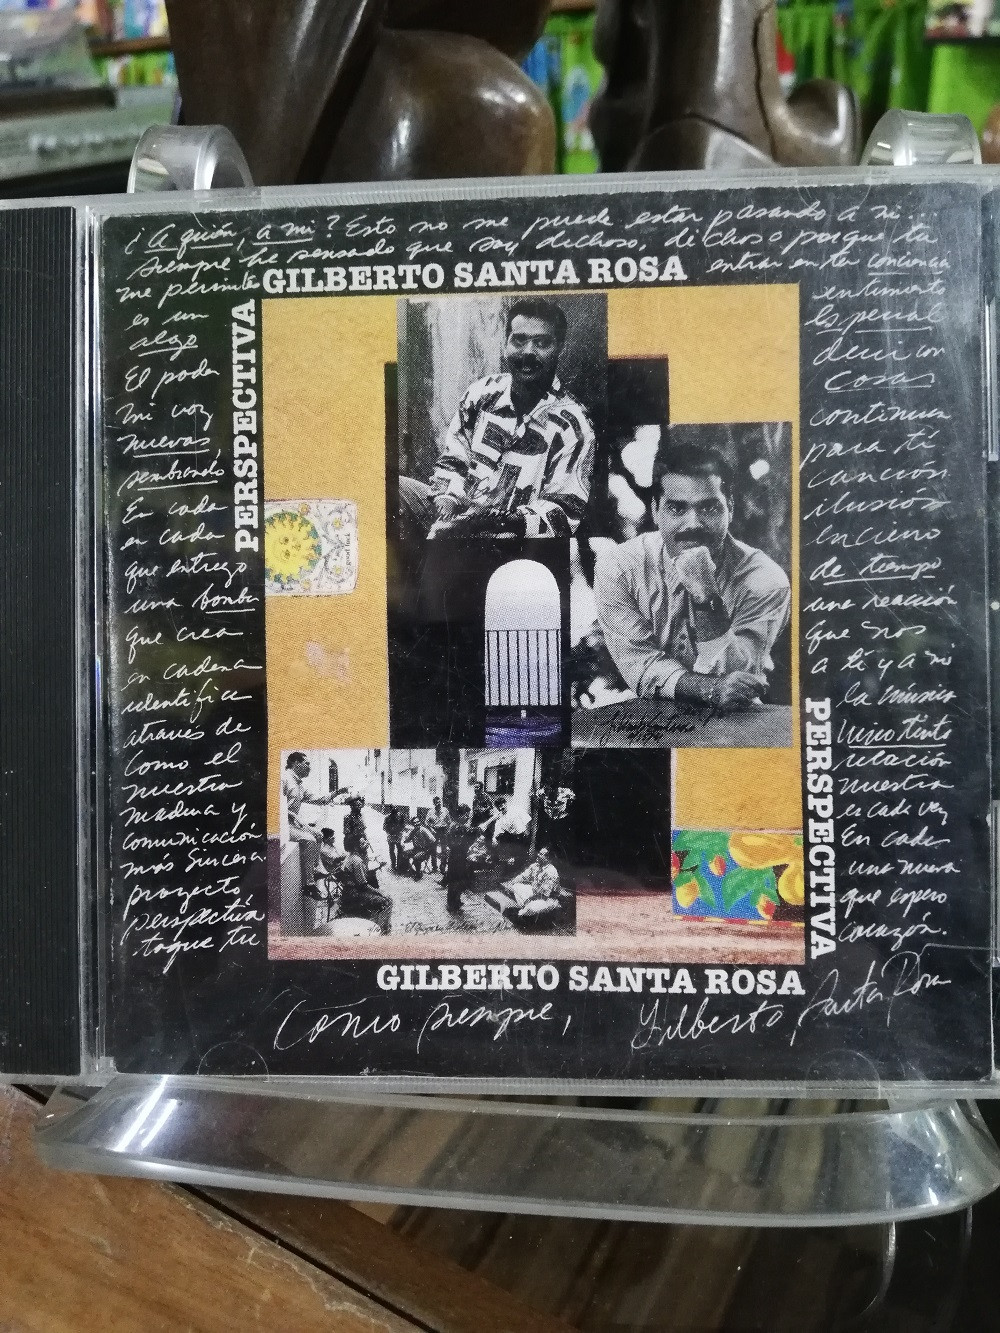 Imagen CD GILBERTO SANTA ROSA - PERSPECTIVA 1